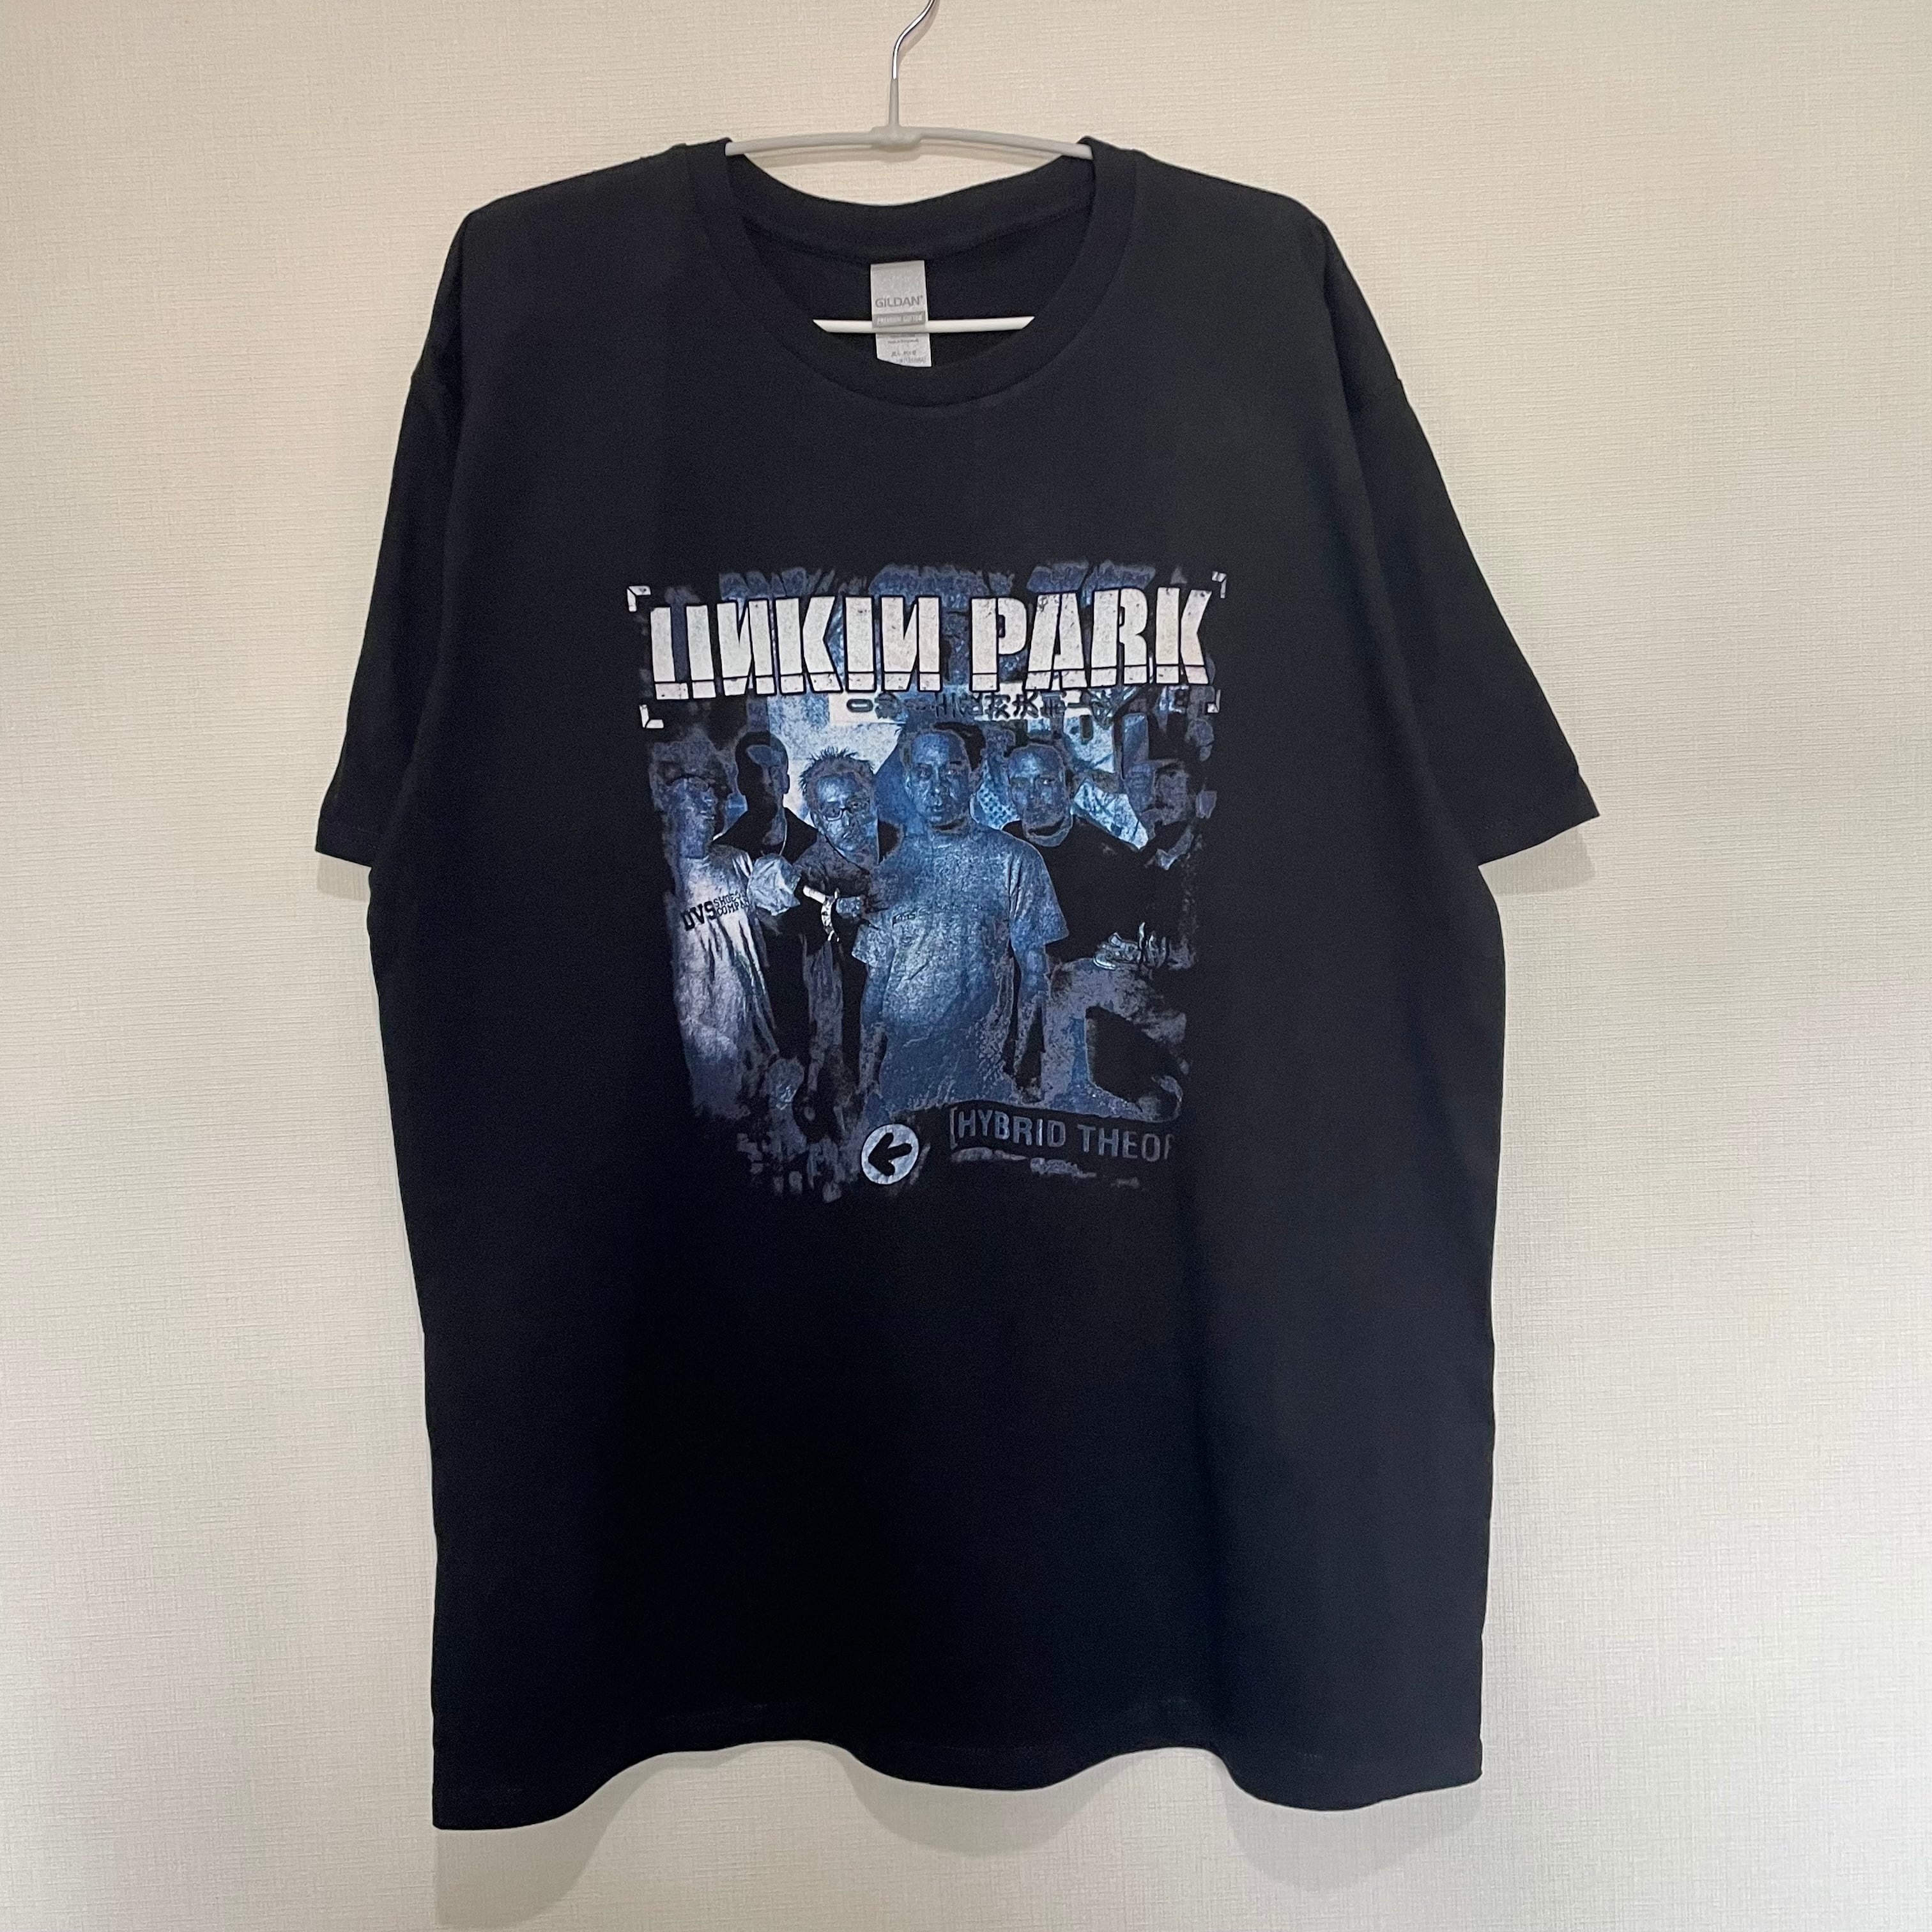 LINKIN PARK Tシャツ HYBRID THEORY Tee